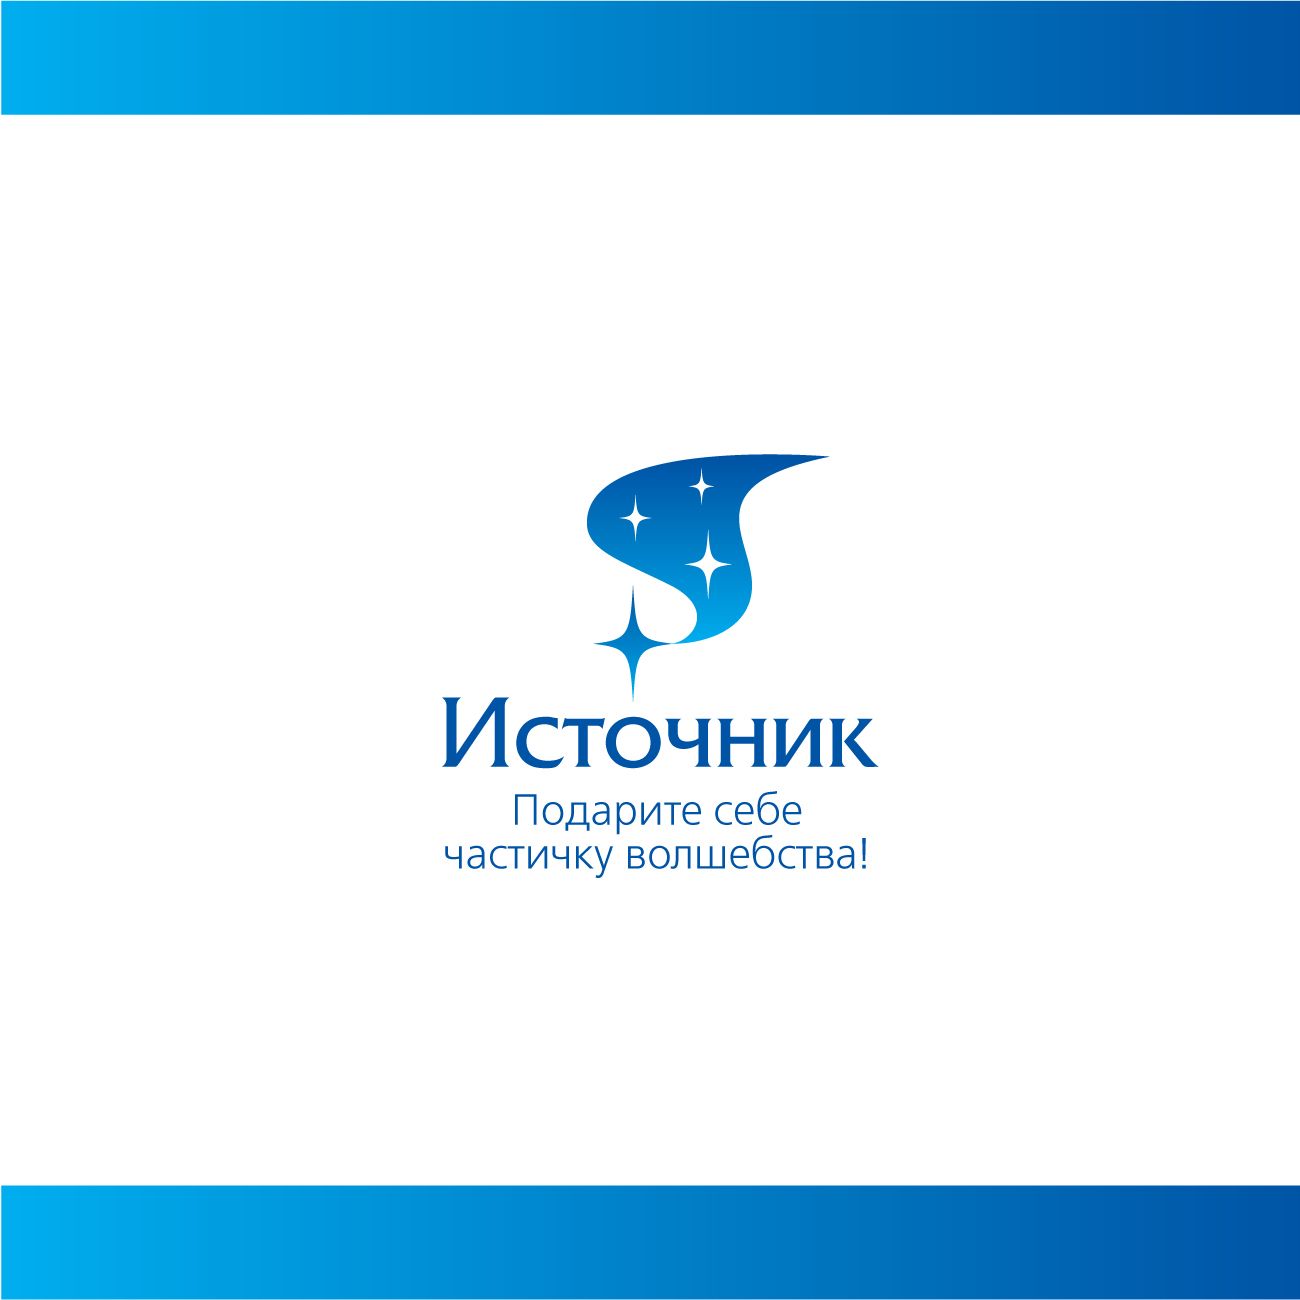 Логотип для магазина Украшений из Фильмов - дизайнер sov-ka